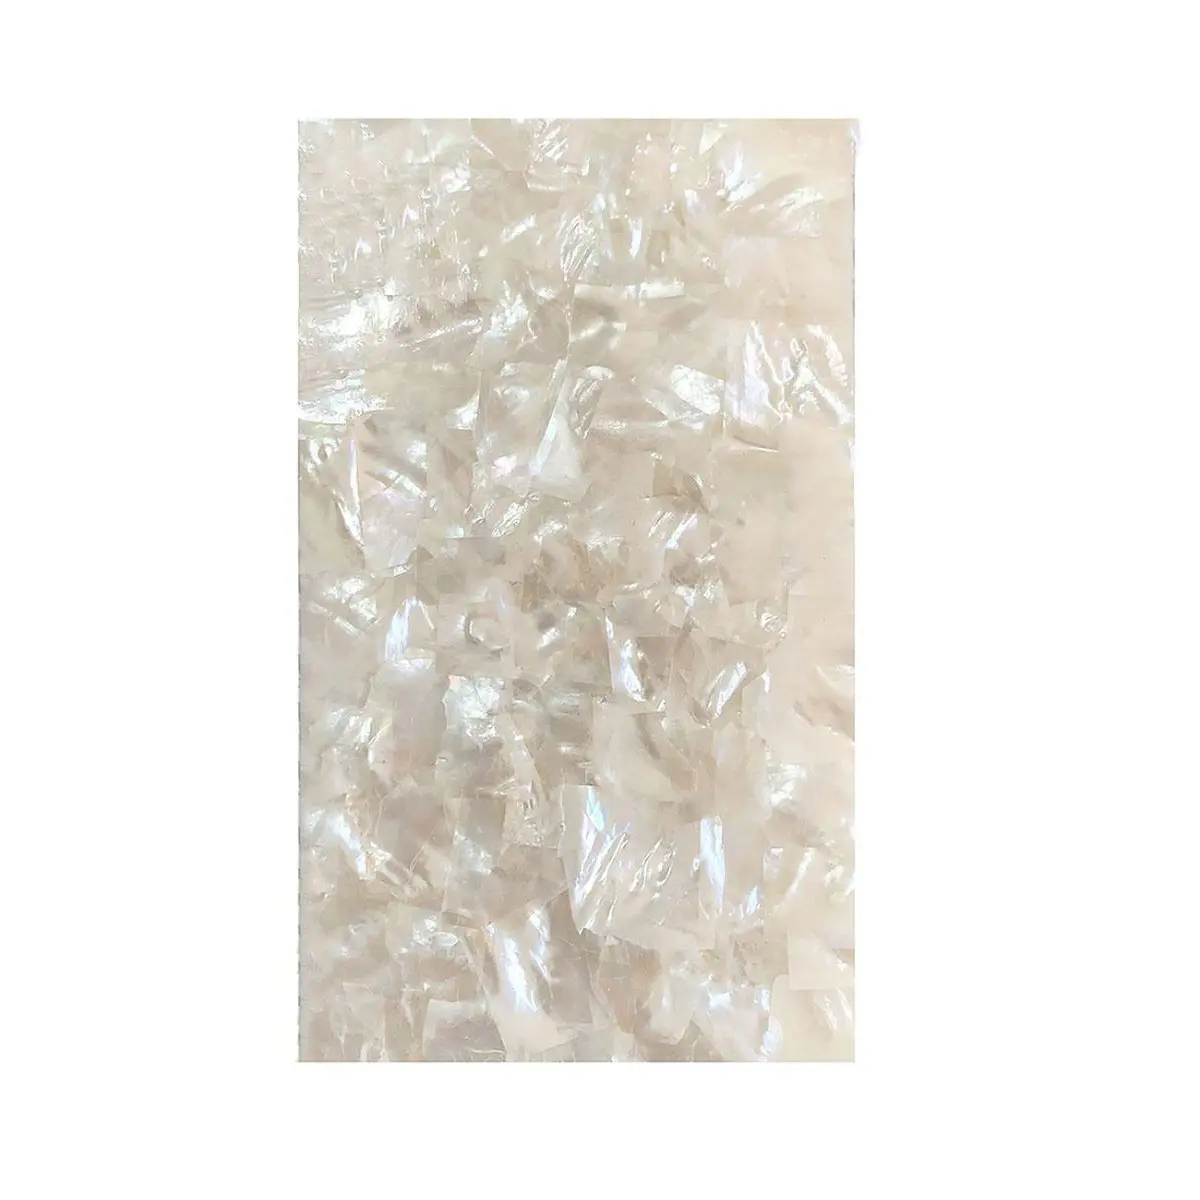 XE-032 nuovo foglio di conchiglia di mare naturale foglio bianco conchiglia madreperla fogli per arte artigianato carta da parati